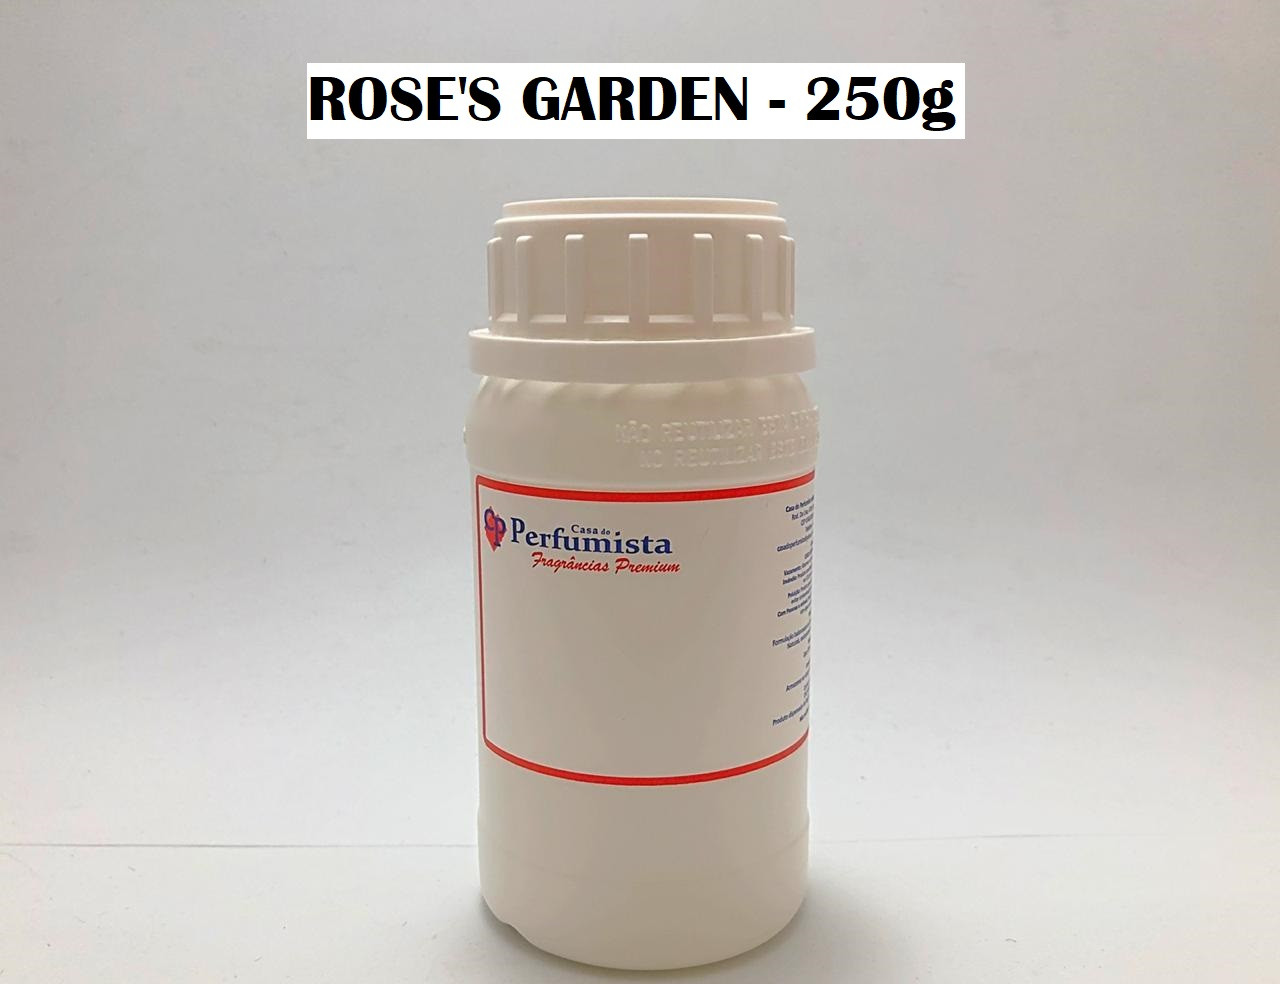 ROSE'S GARDEN - 250g